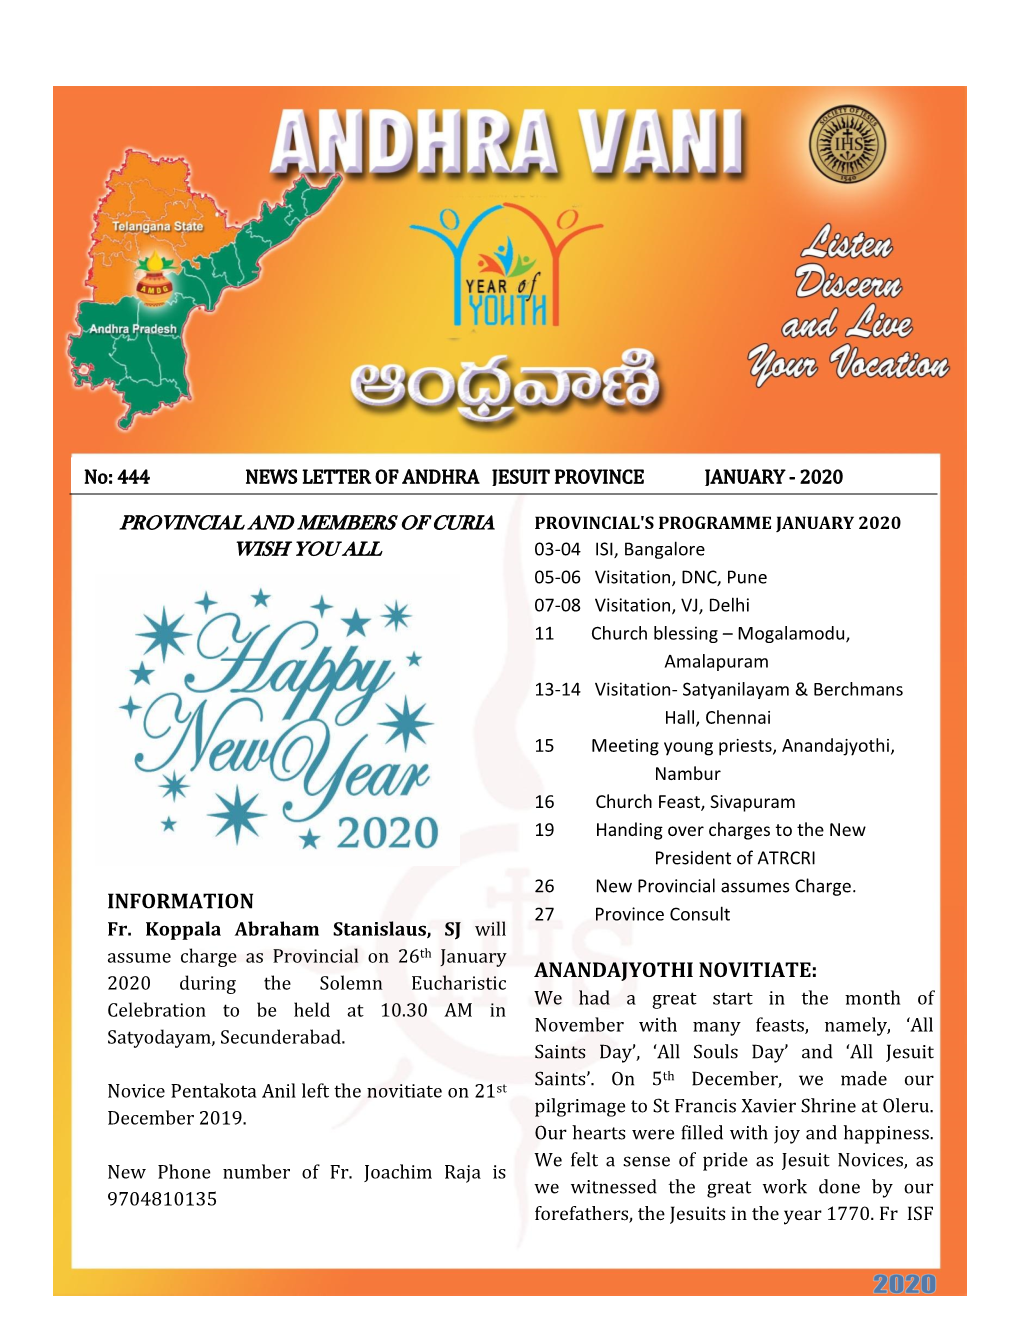 Andhra Vani Jan 2020